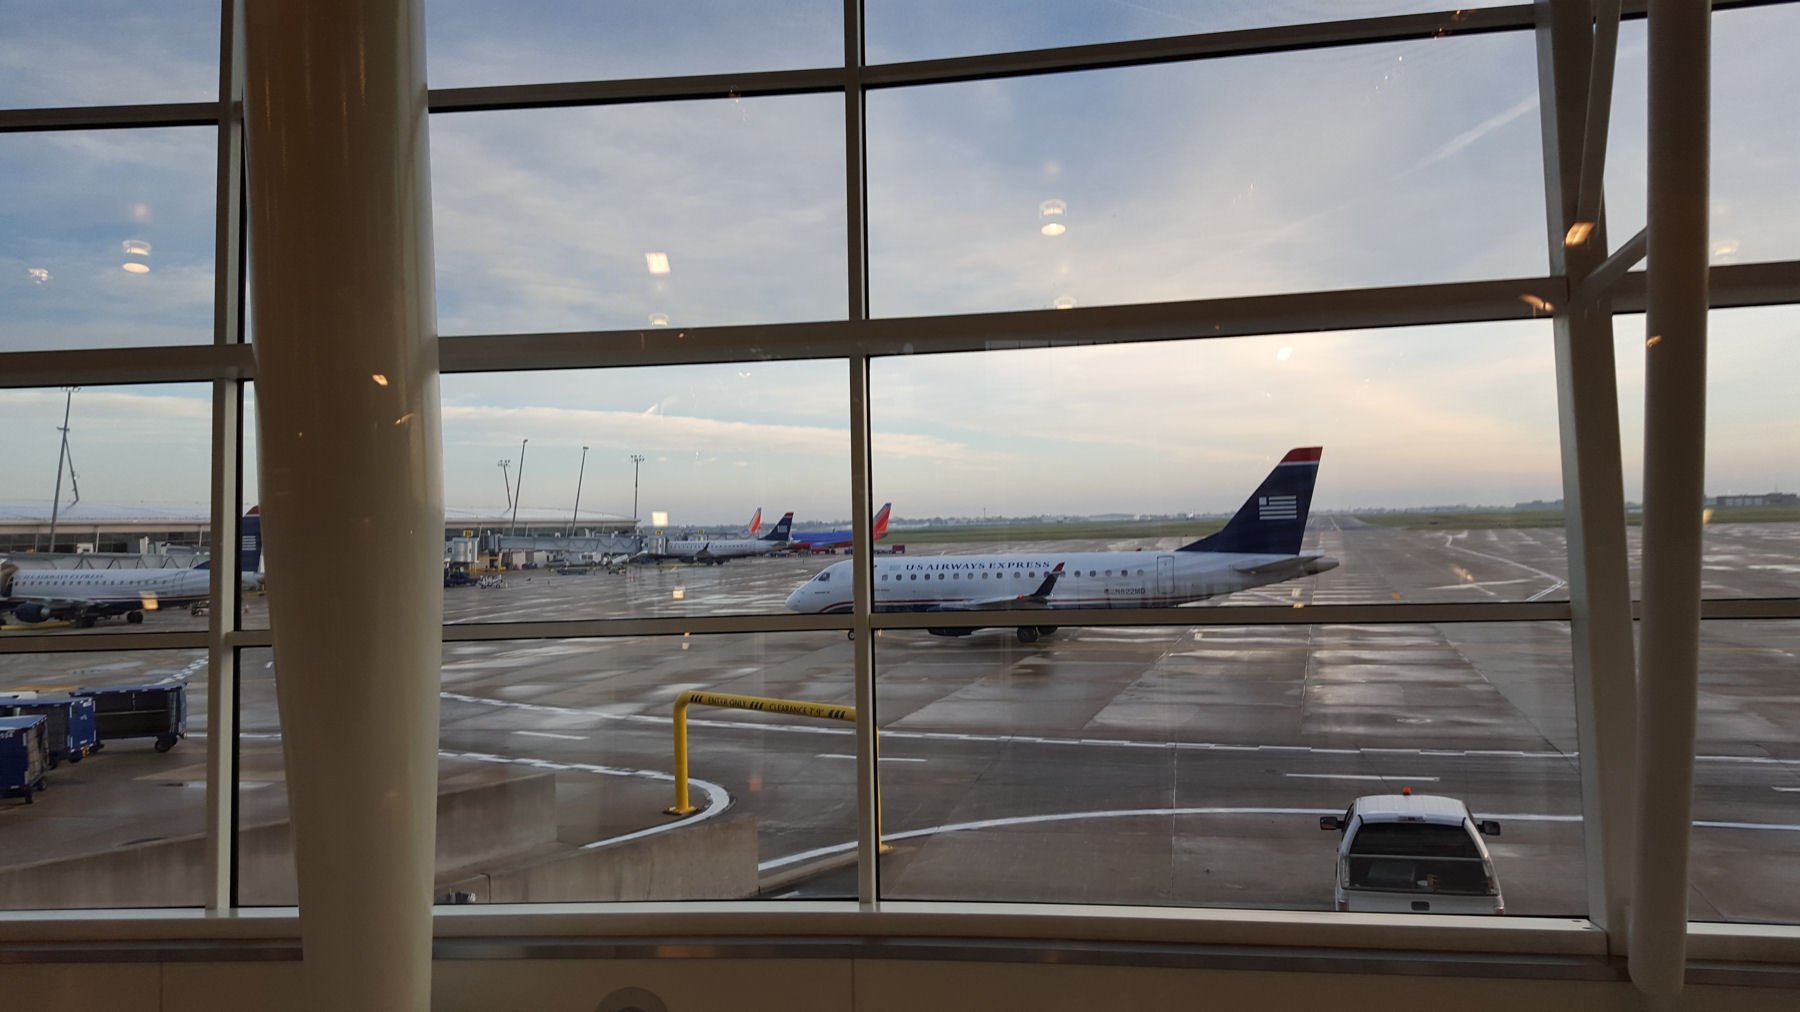 Новый день аэропорт. Вид из окна аэропорта. Вид с окна аэропорта. Вид из окна аэропорта на самолет. Самолет из окна аэропорта.